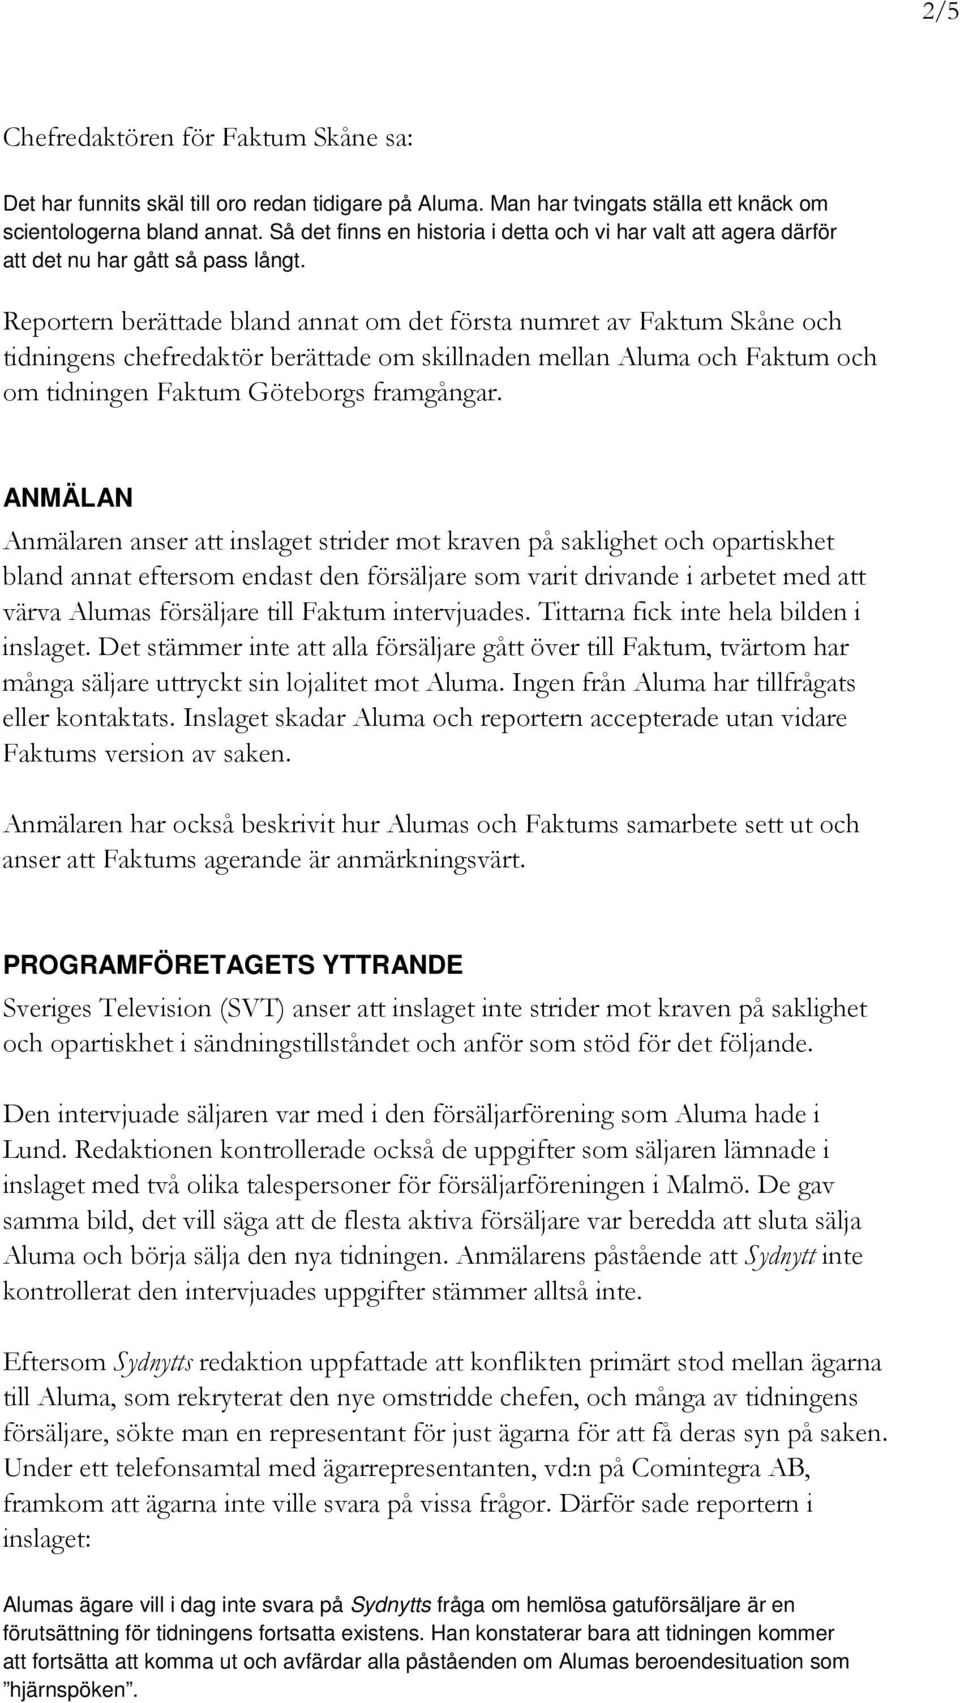 Reportern berättade bland annat om det första numret av Faktum Skåne och tidningens chefredaktör berättade om skillnaden mellan Aluma och Faktum och om tidningen Faktum Göteborgs framgångar.